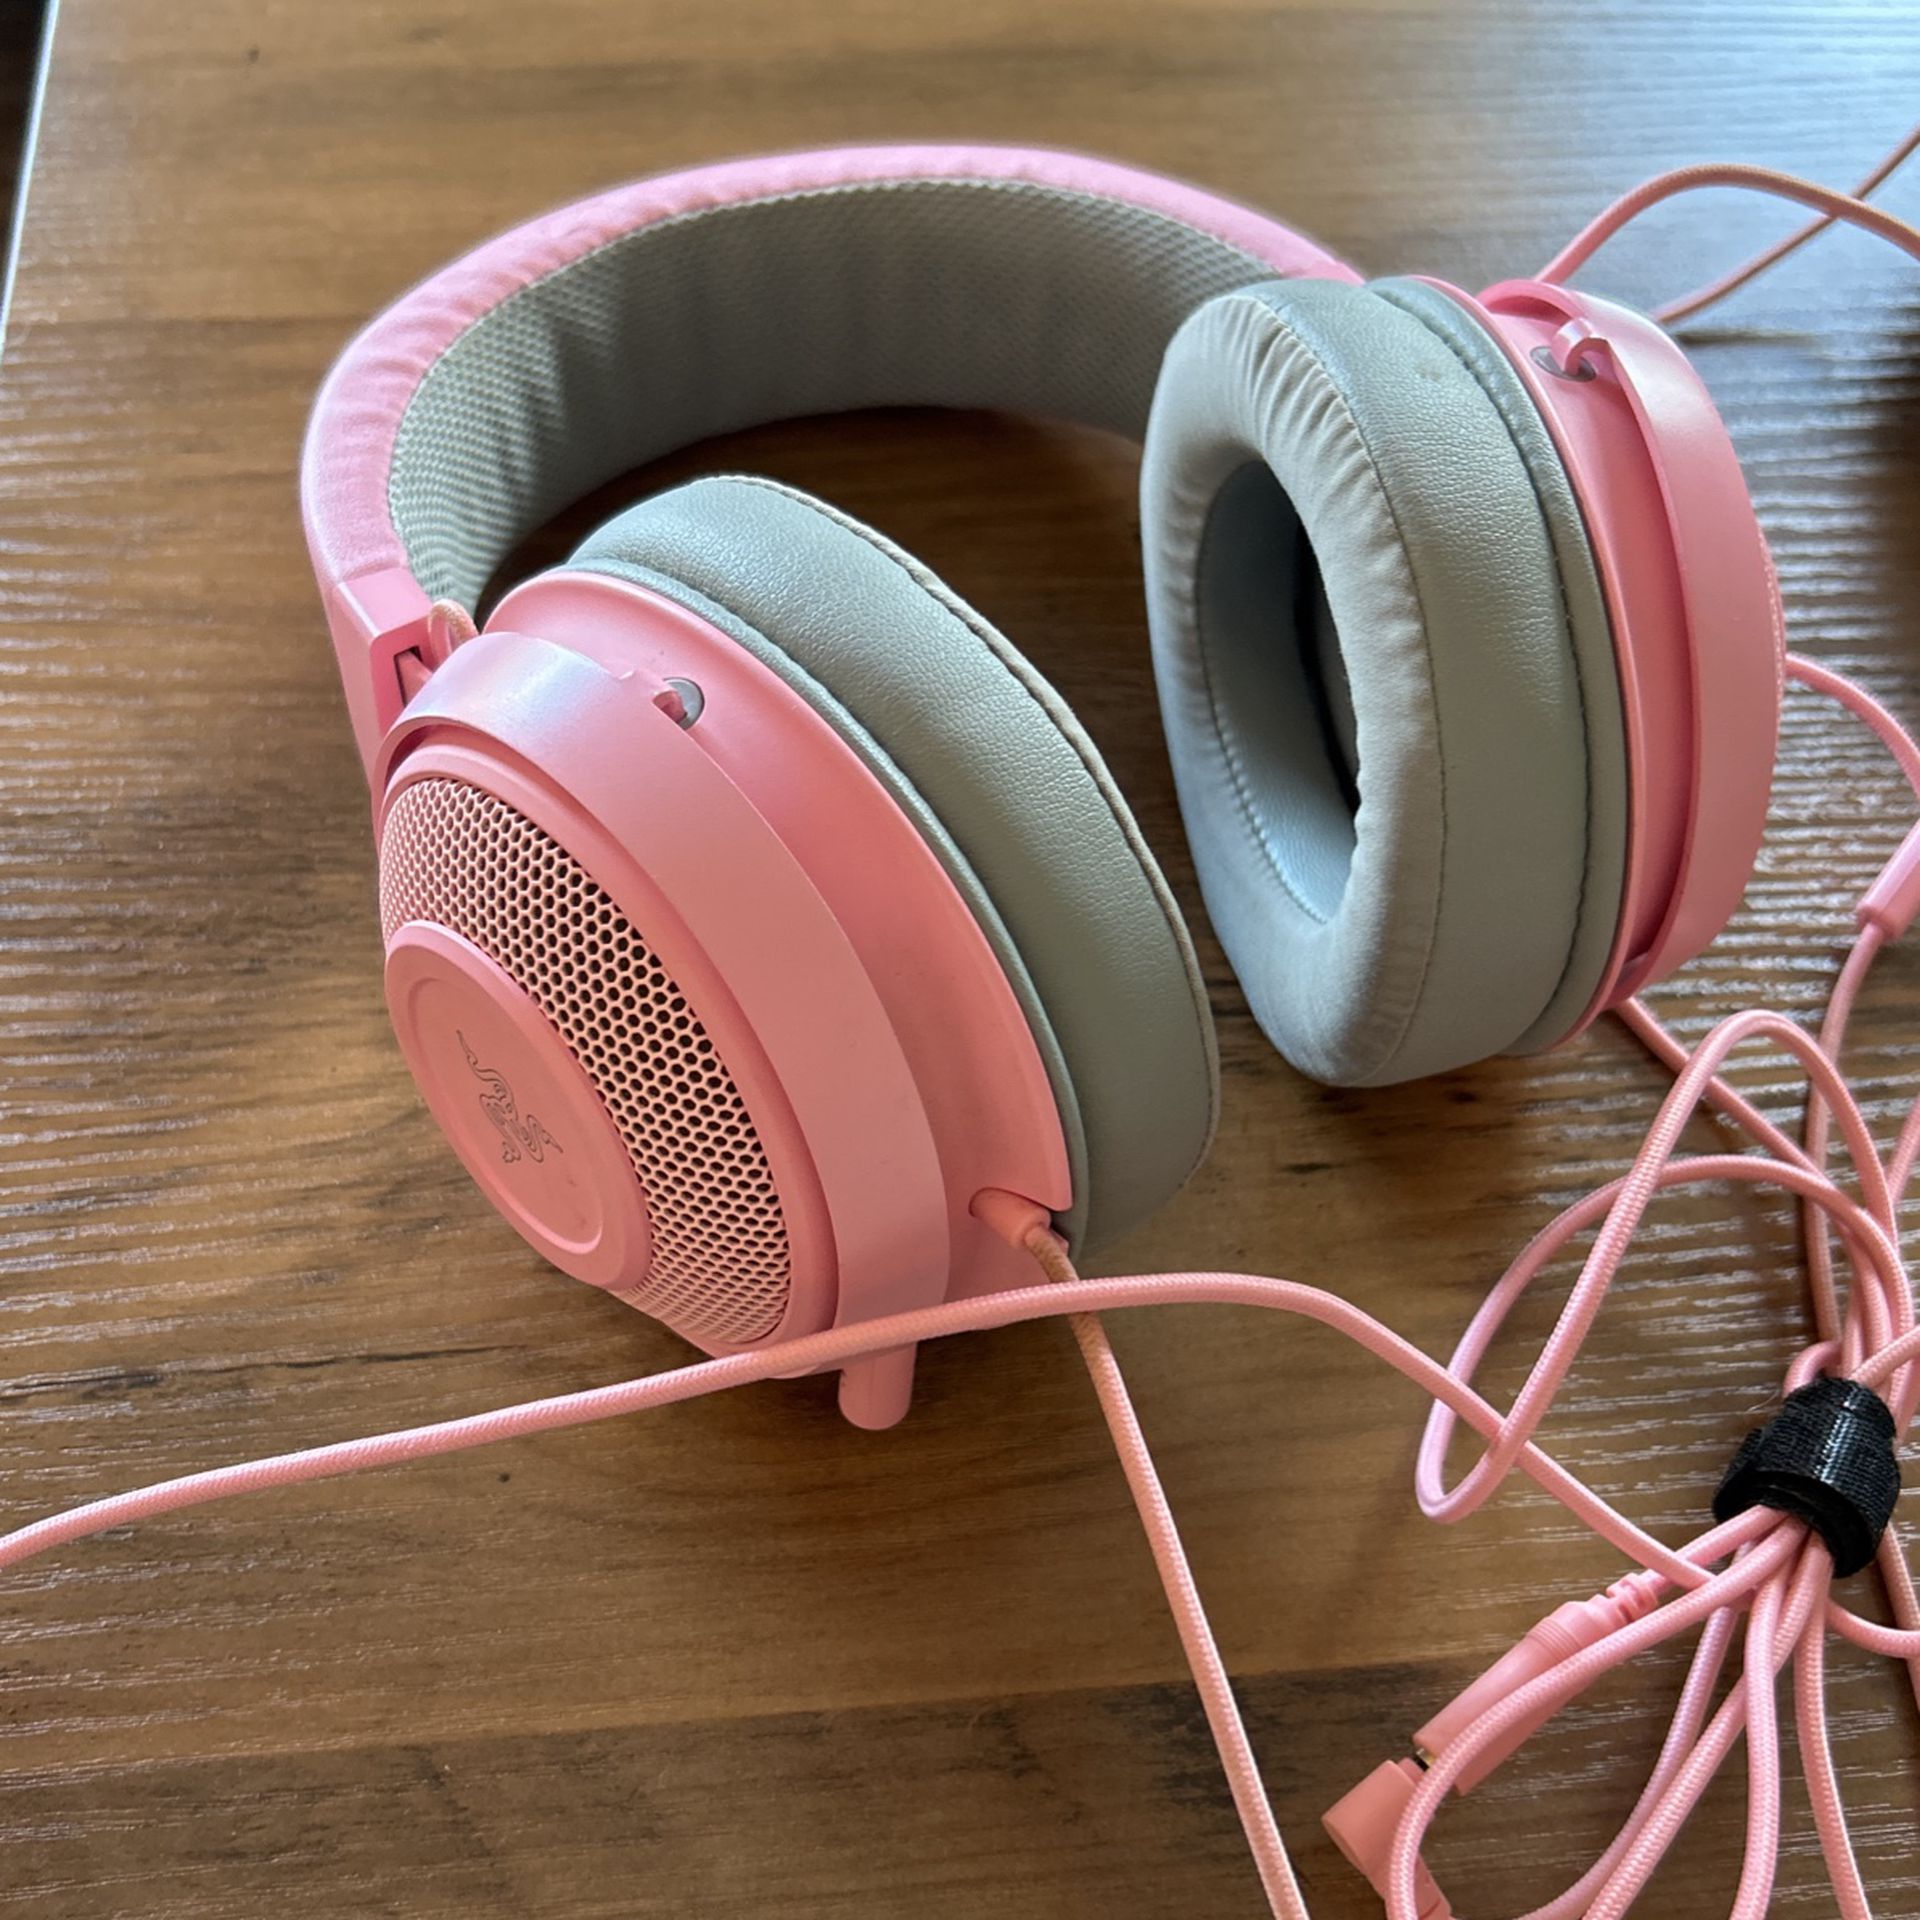 Pink Razer headphones